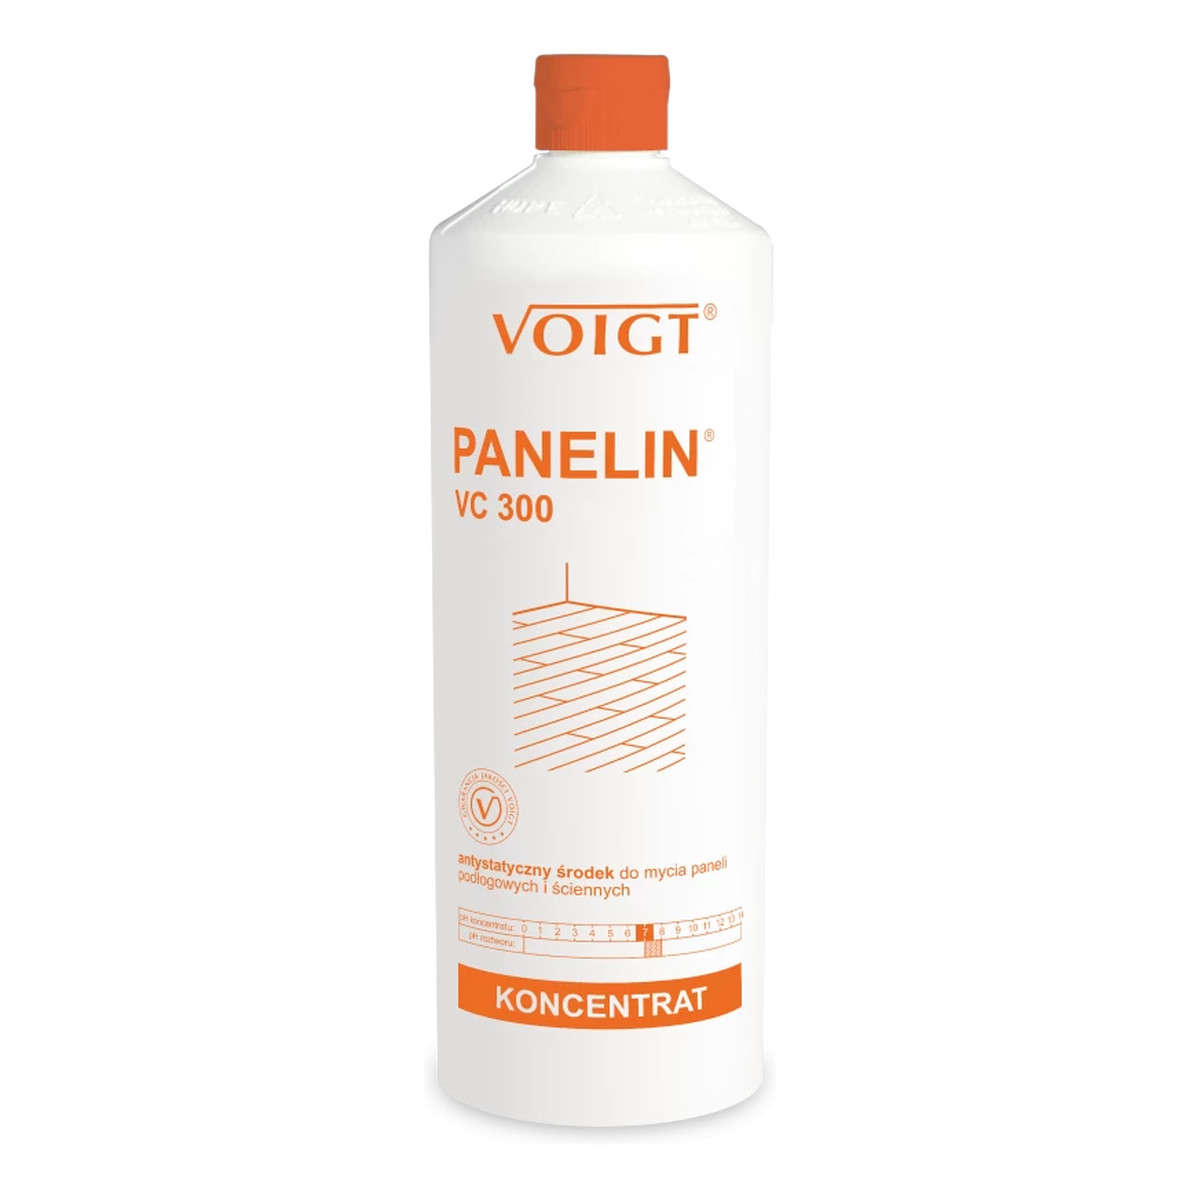 Voigt Panelin Antystatyczny środek do mycia paneli podłogowych i ściennych VC300 1000ml